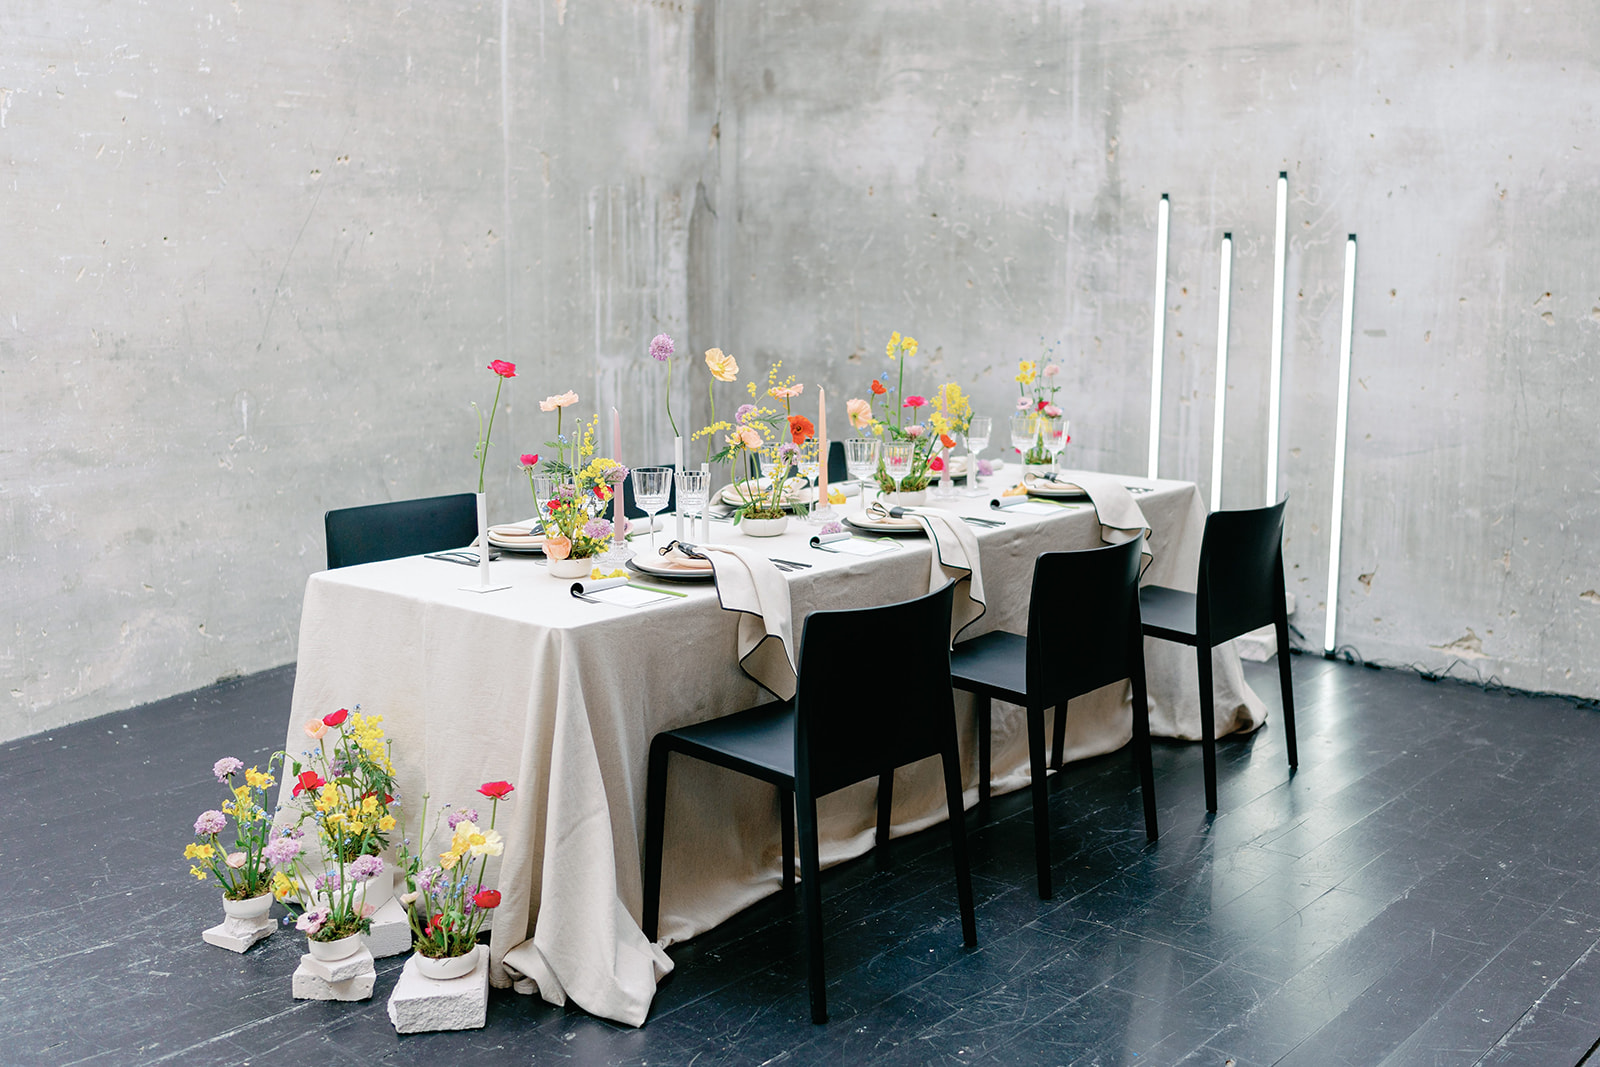 Photographe Mariage Couple Toulouse déco de la table et déco florale colorée